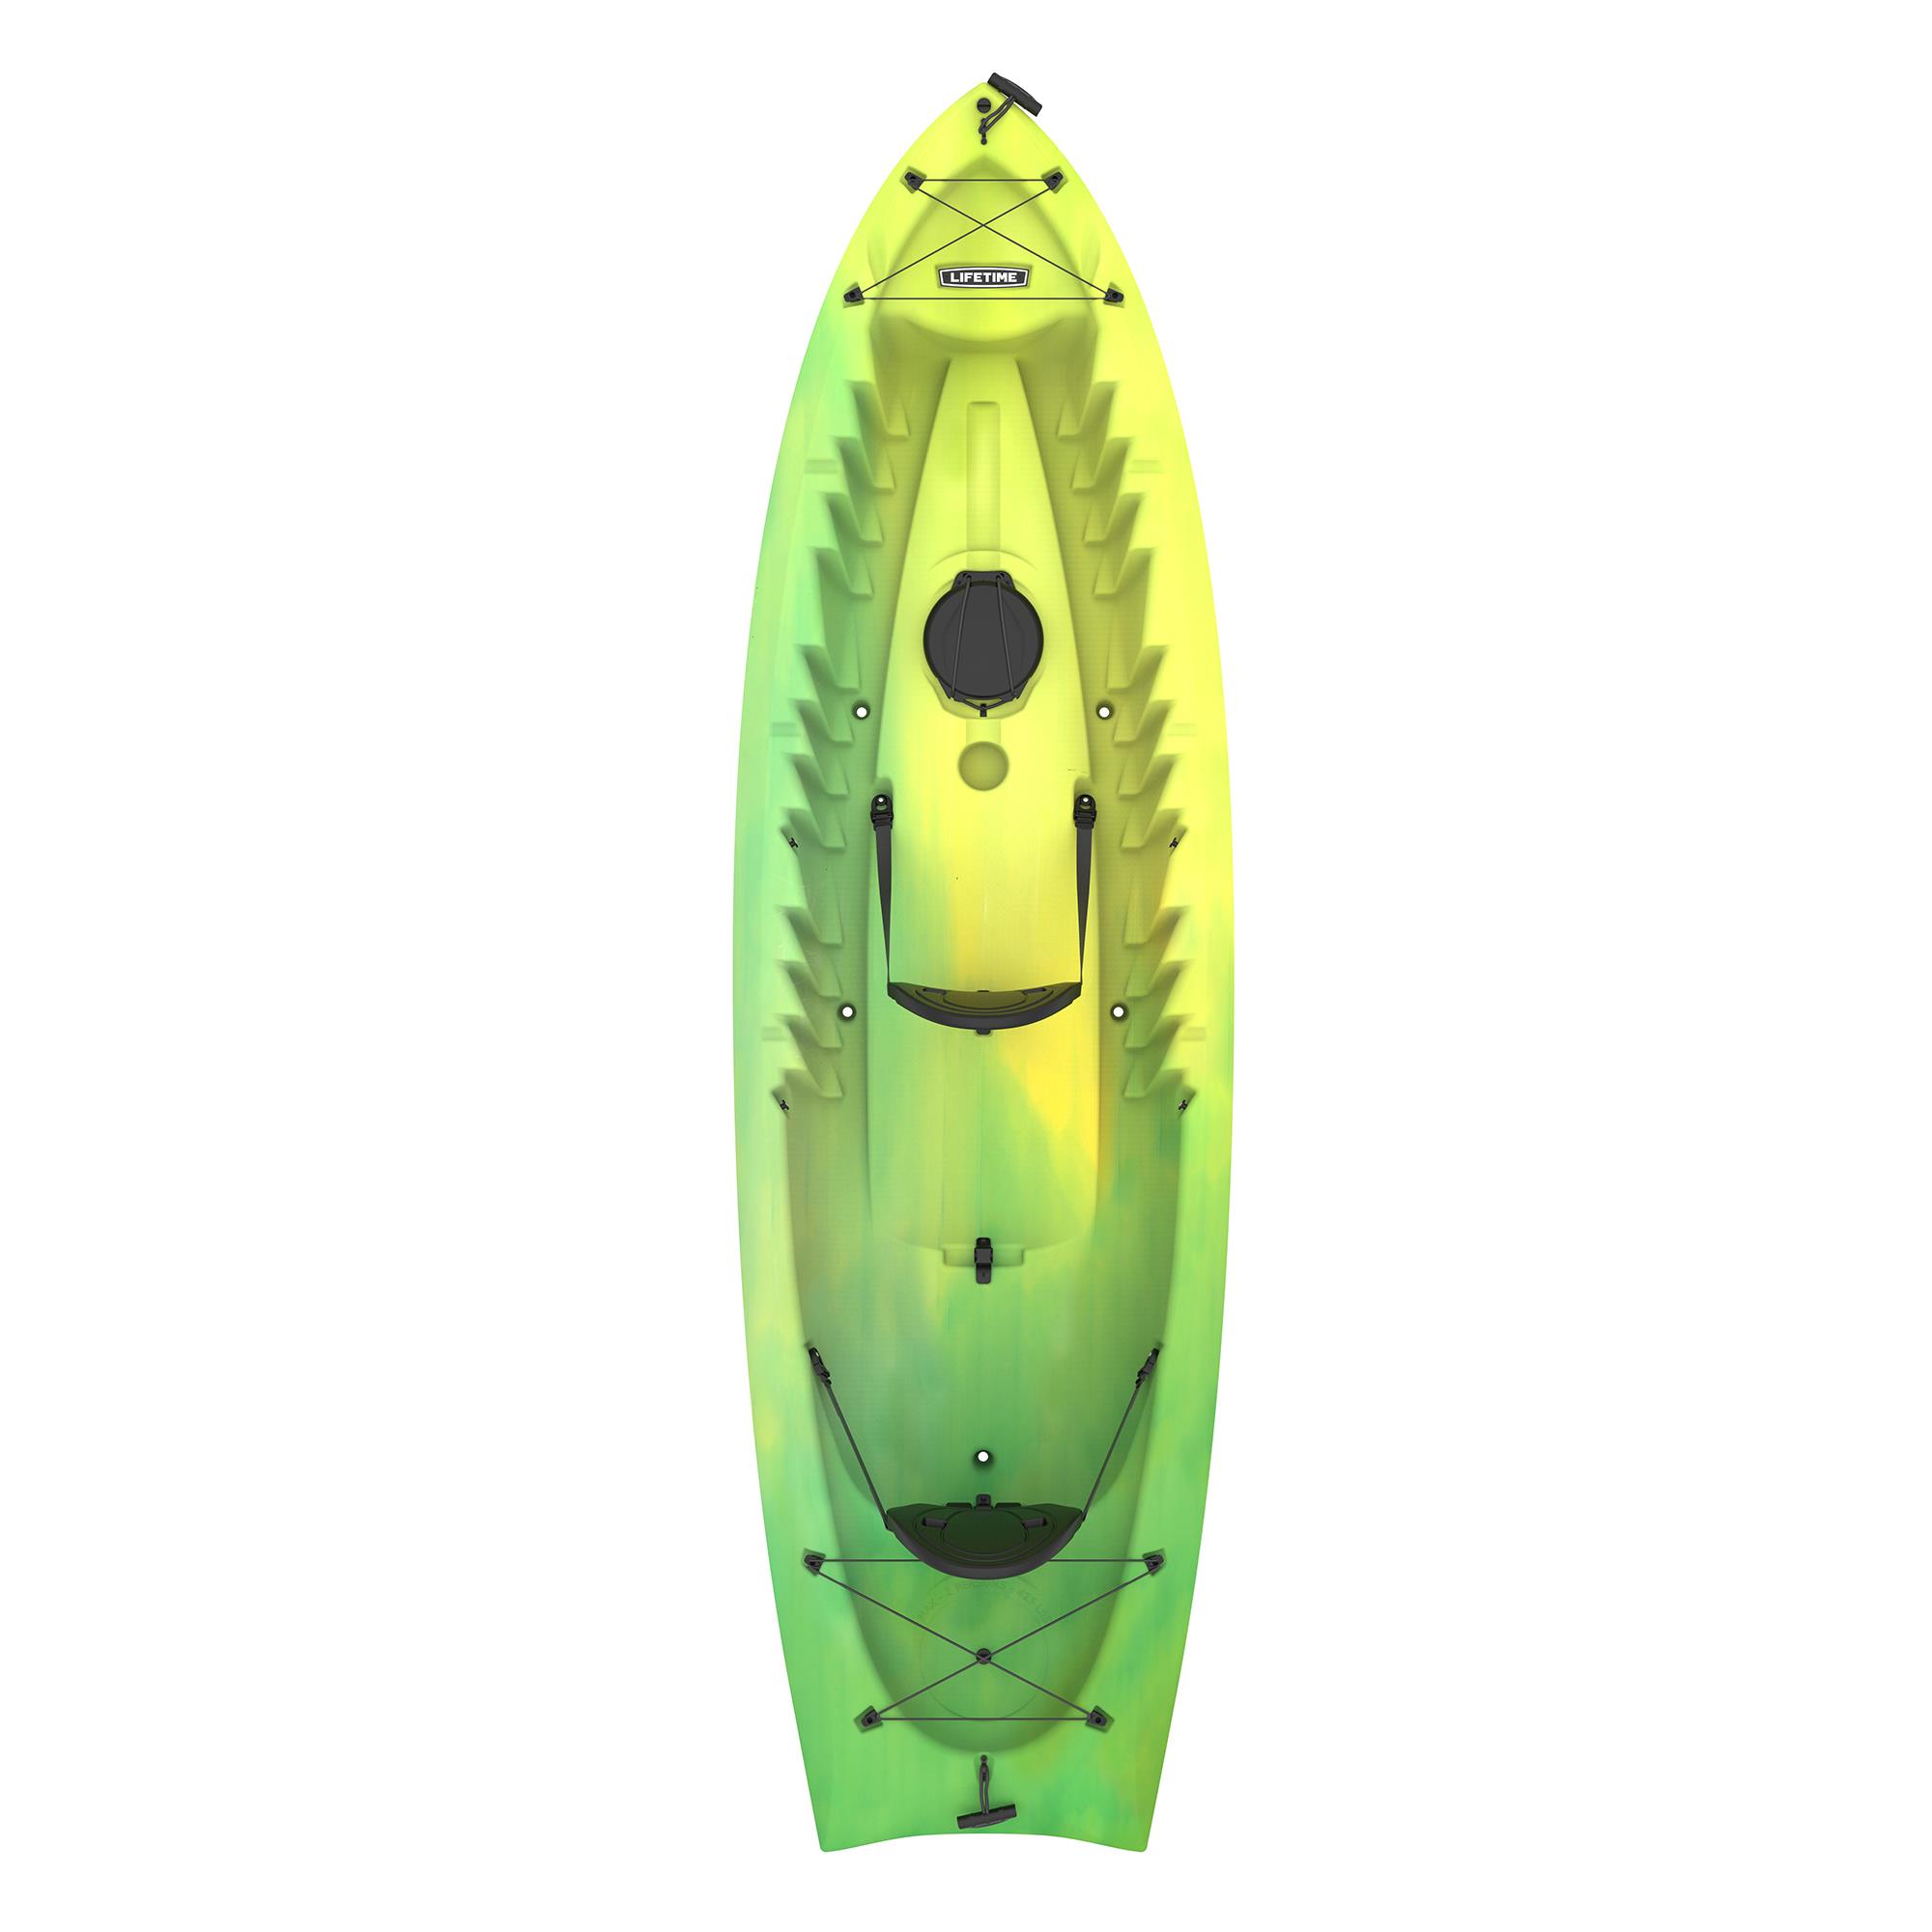 Lifetime Kokanee 10.5 ft Tandem Kayak,- Lemongrass Fusion (91338) - image 1 of 13